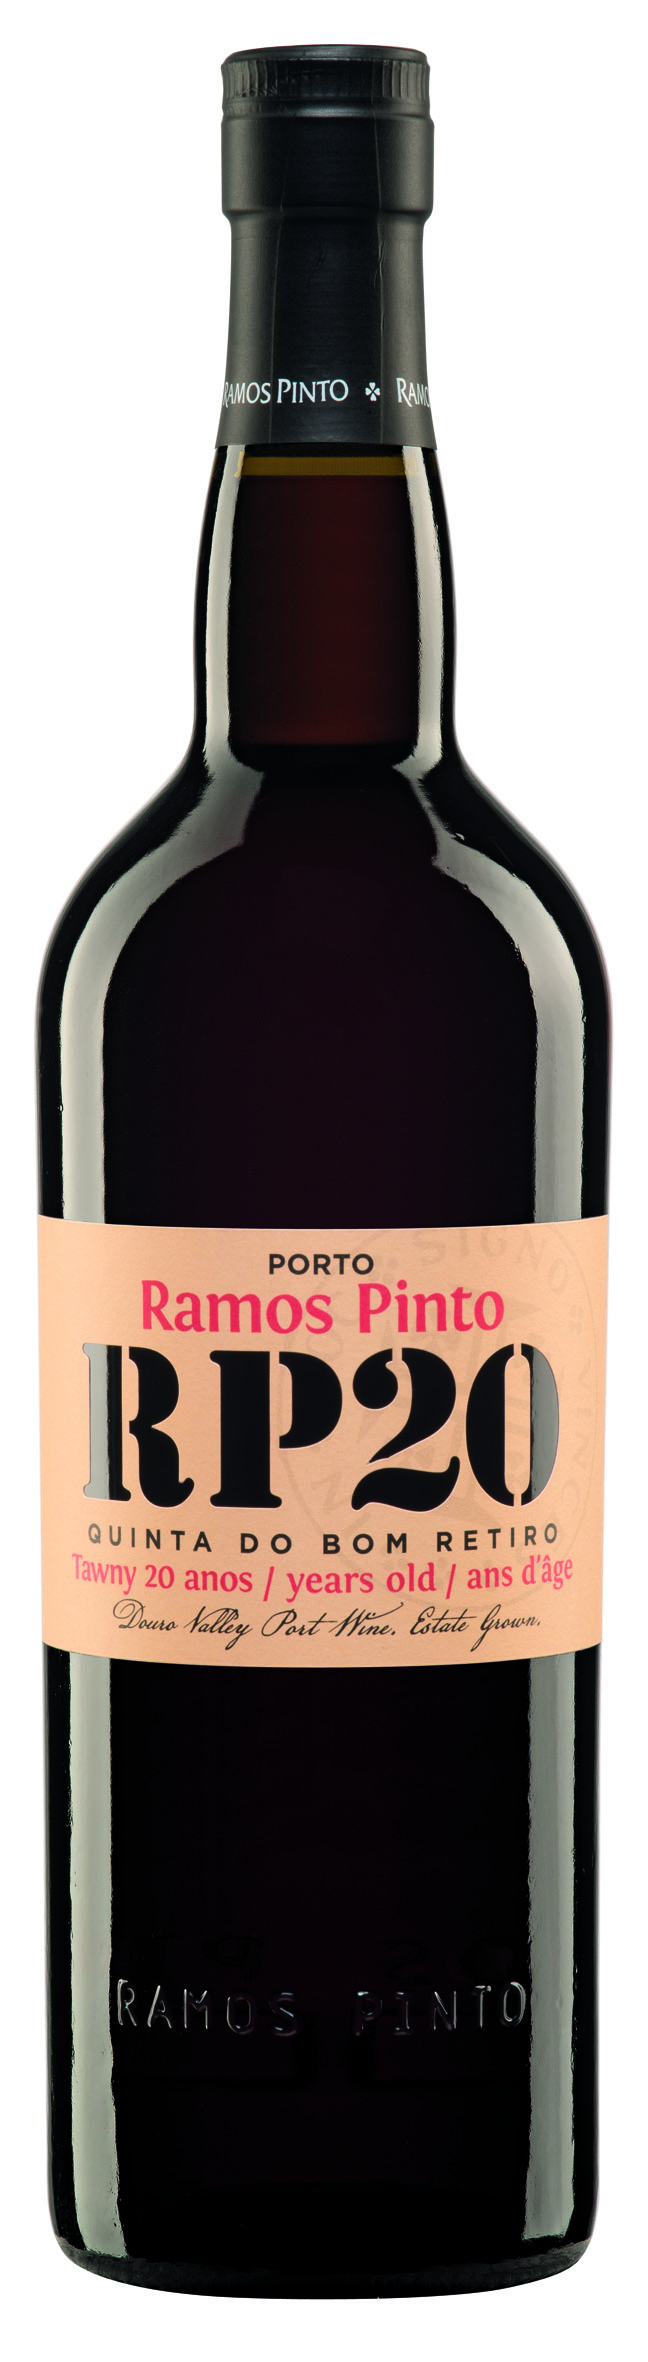 Ramos Pinto Port 20 Jahre Quinta do Bom Retiro